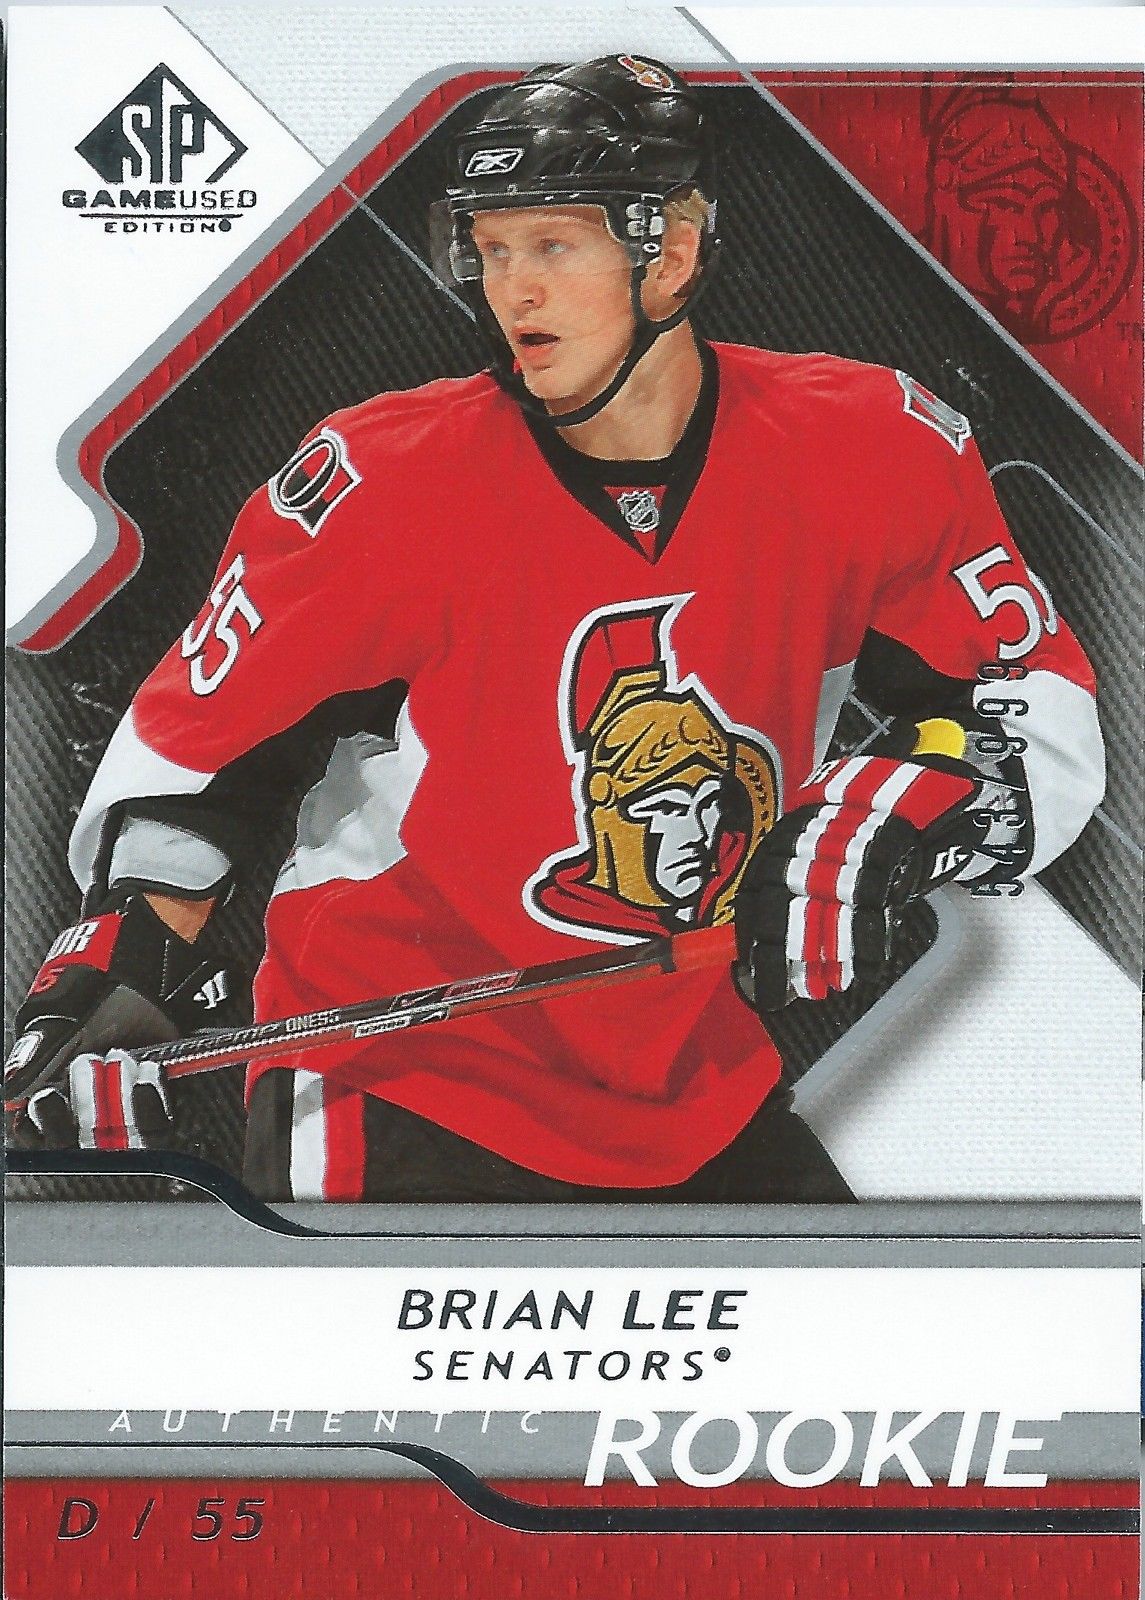  2008-09 SP Game Used BRIAN LEE Rookie /999 Upper Deck RC NHL 01553 Image 1